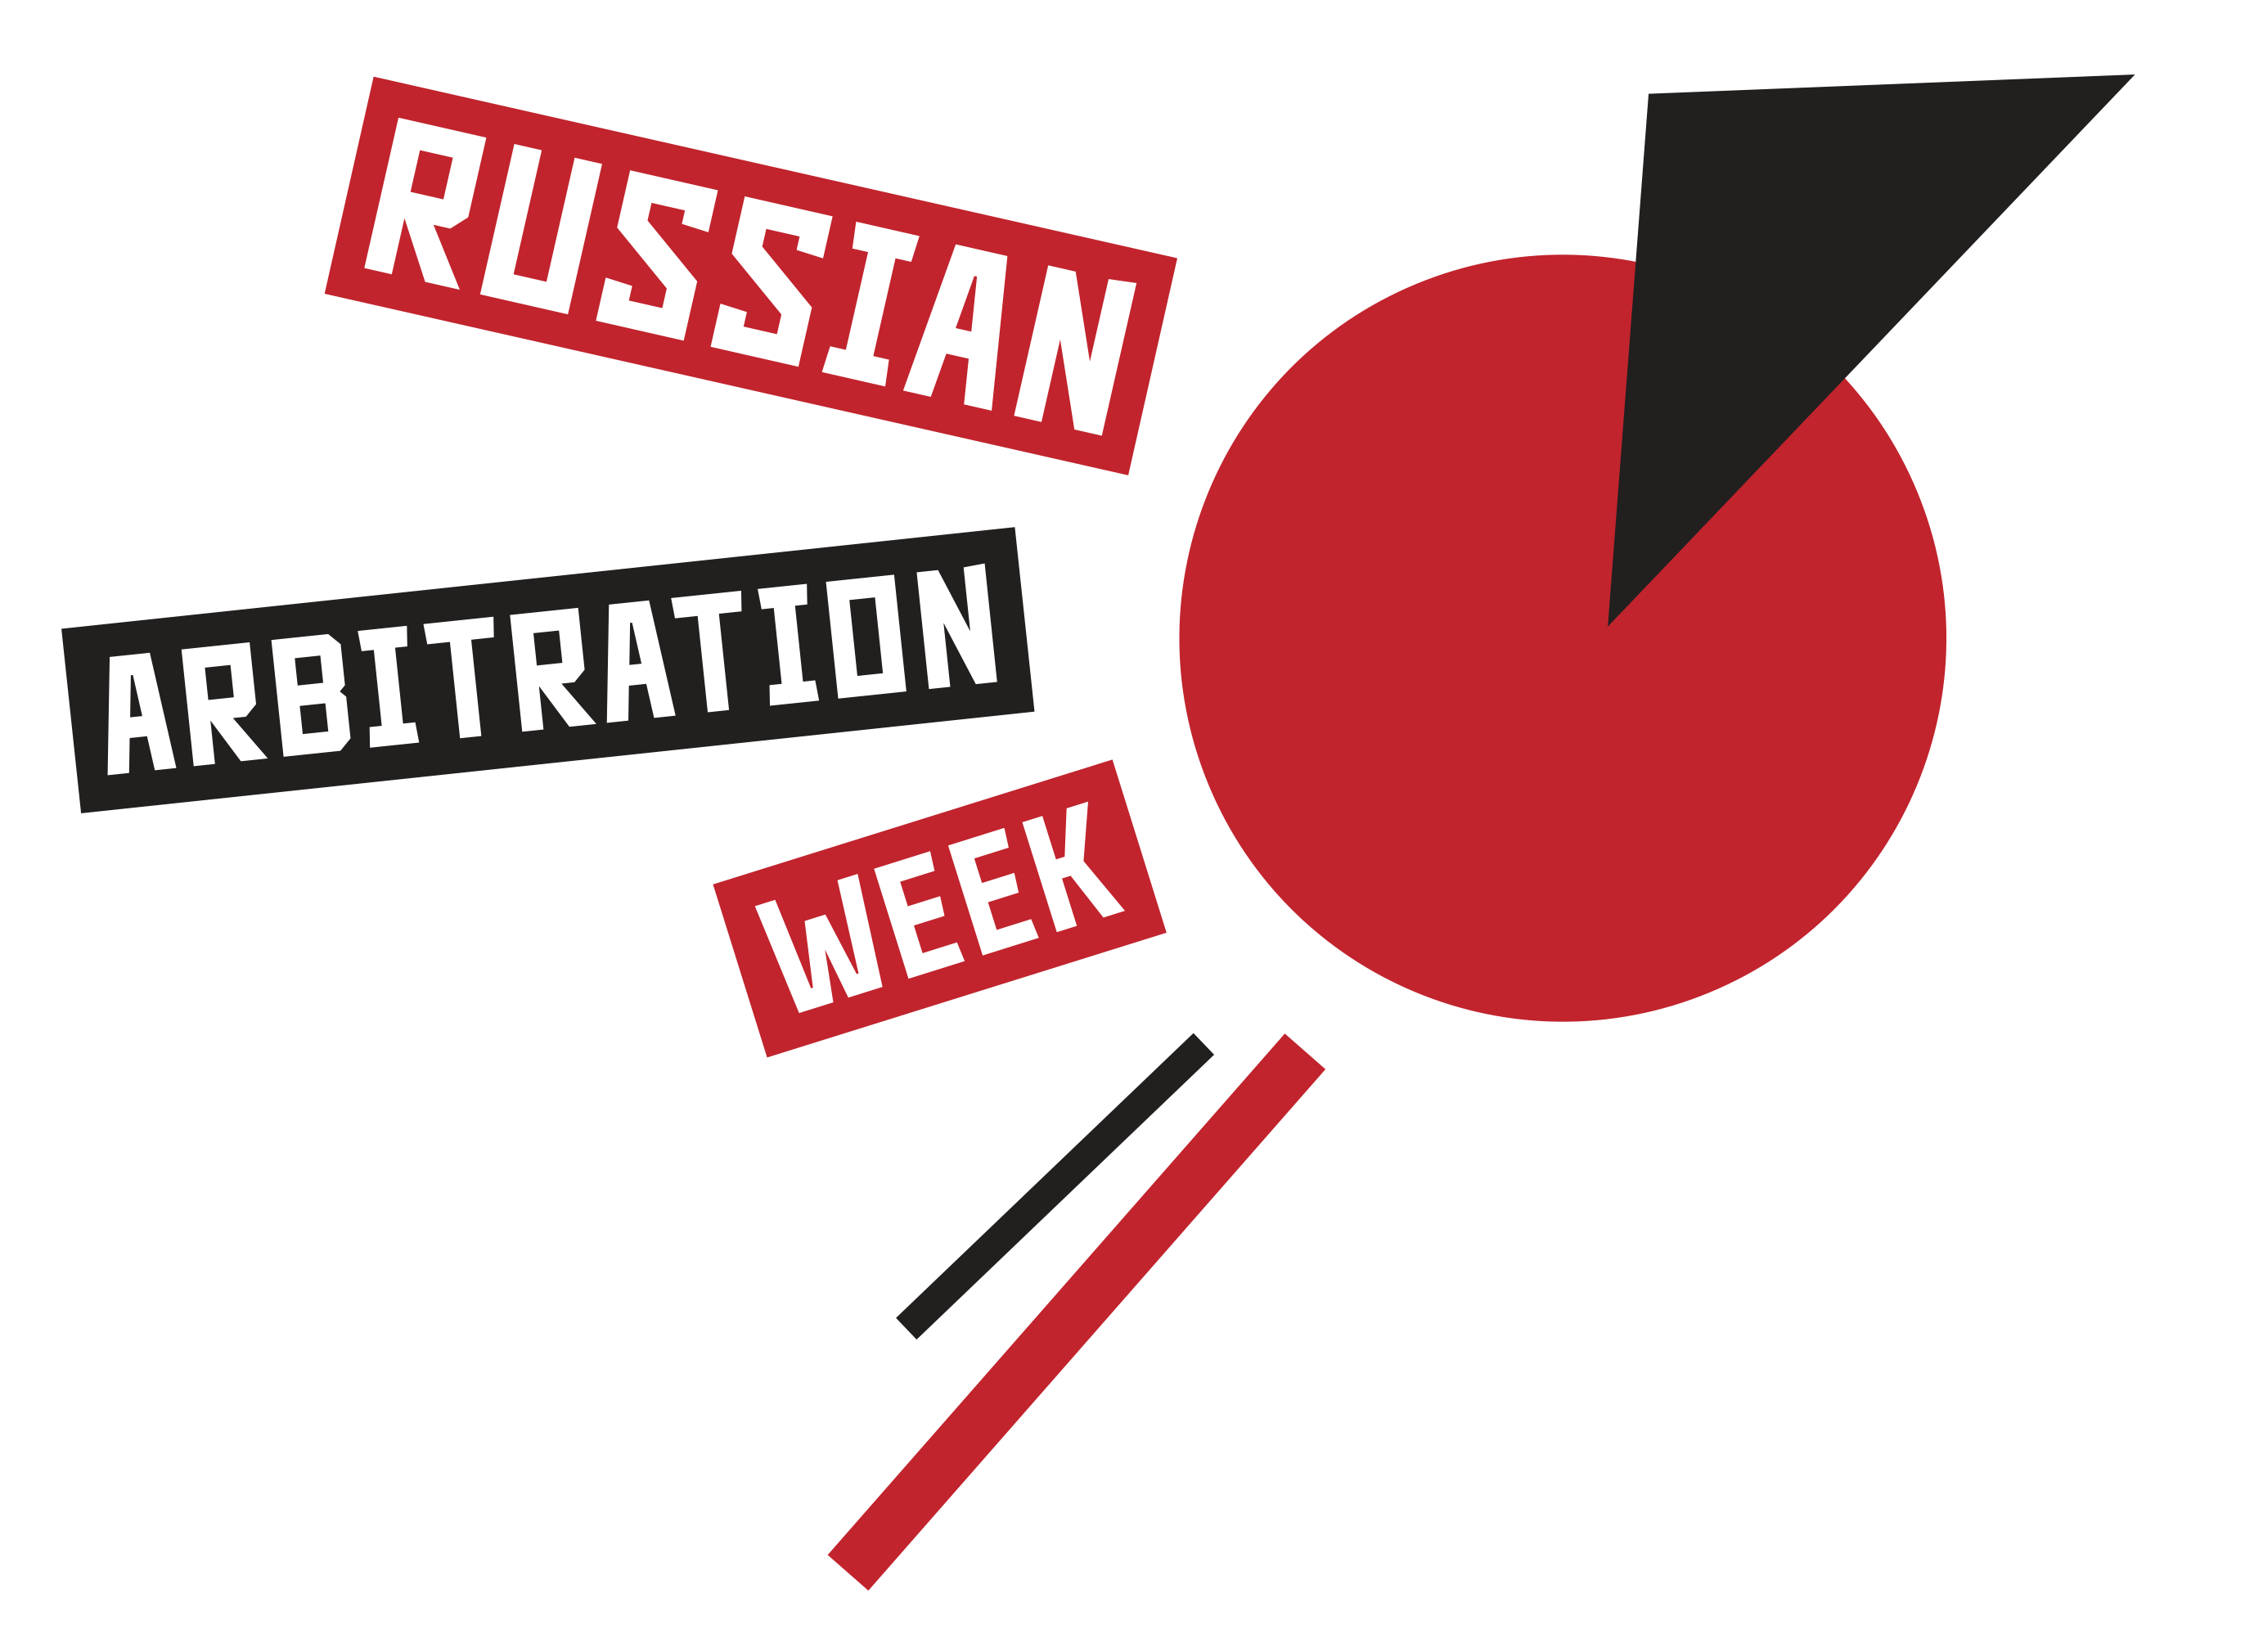 Российский арбитражный день-2020 пройдет онлайн на площадке LF Академии